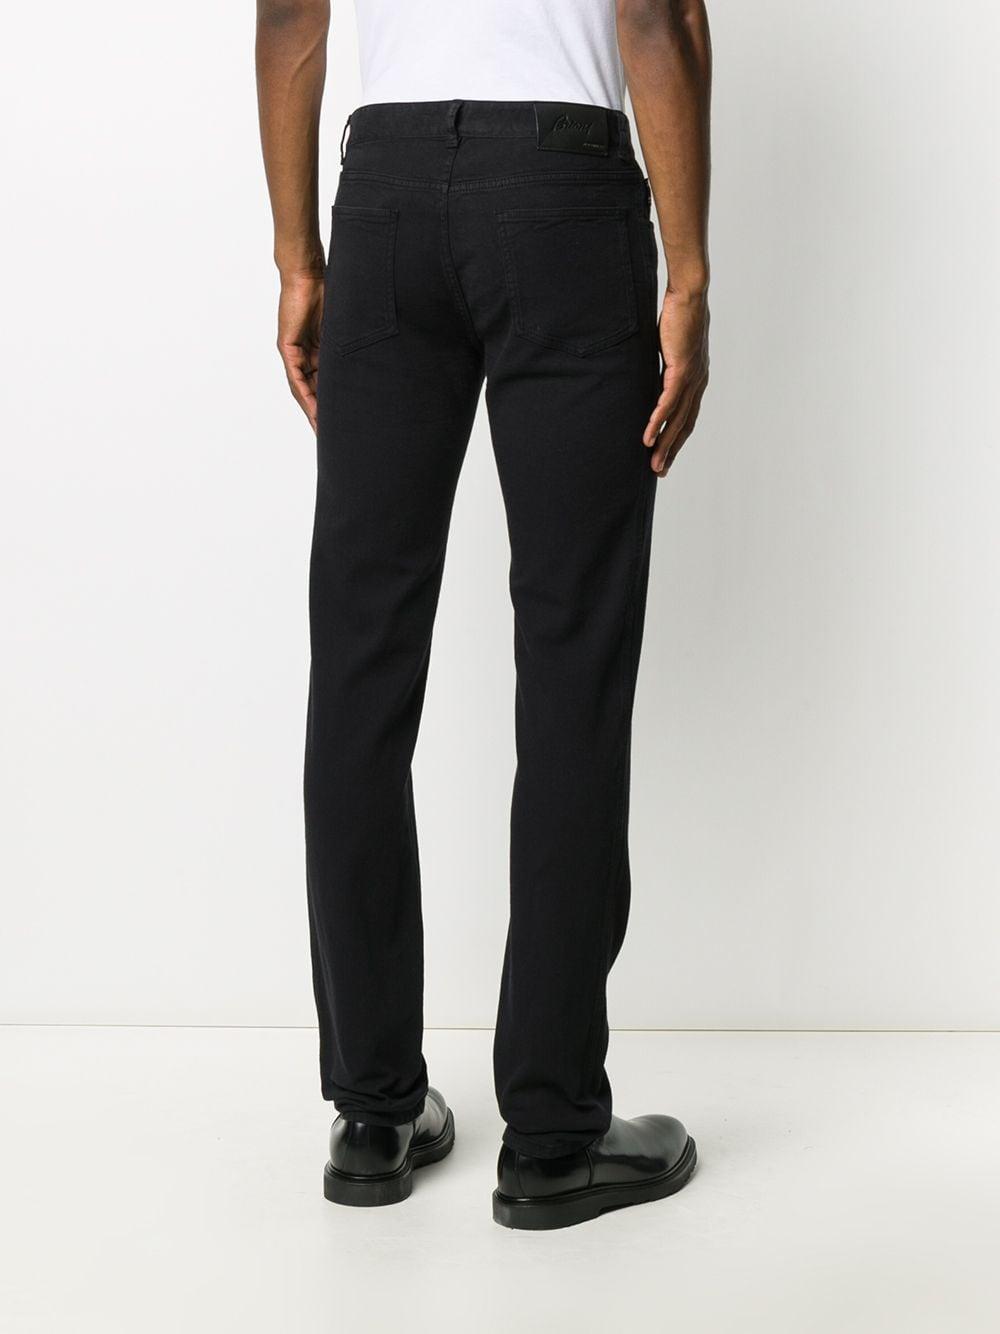 Brioni Denim Meribel Five-pocket Jeans in Black for Men - Lyst